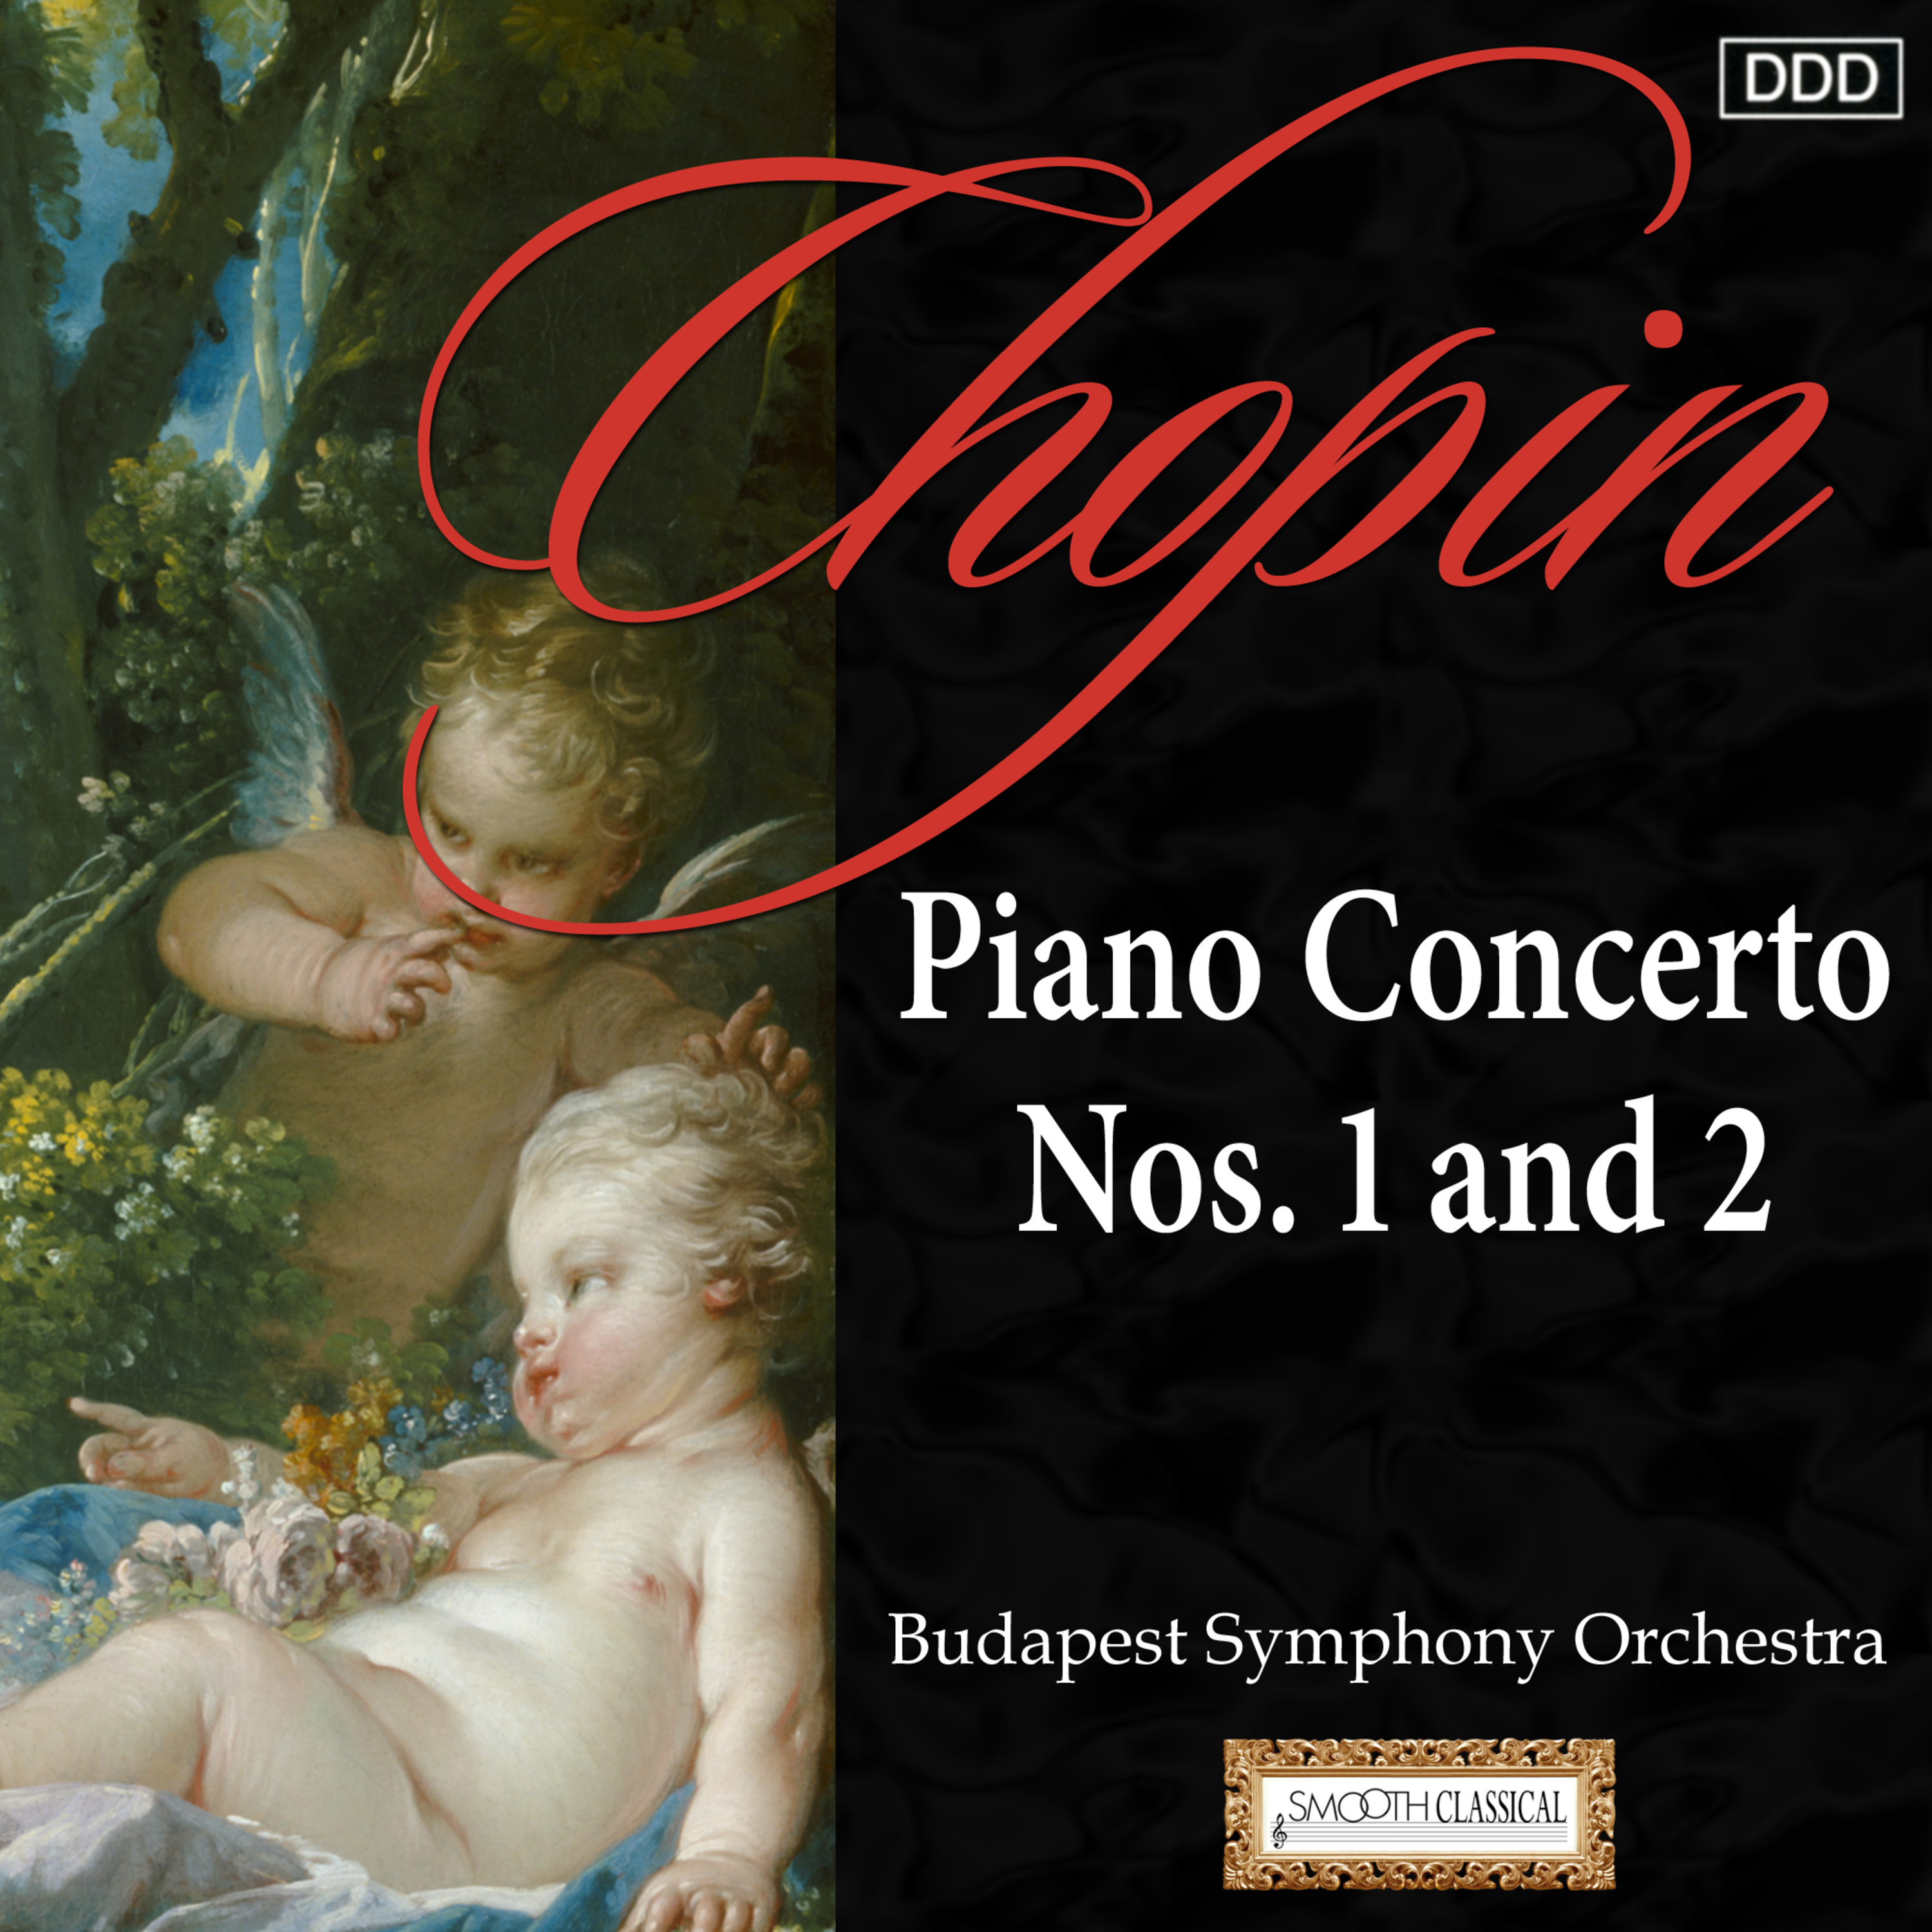 Piano Concerto No. 1 in E minor, Op. 11: II. Romance: Larghetto - III. Rondo: Vivace